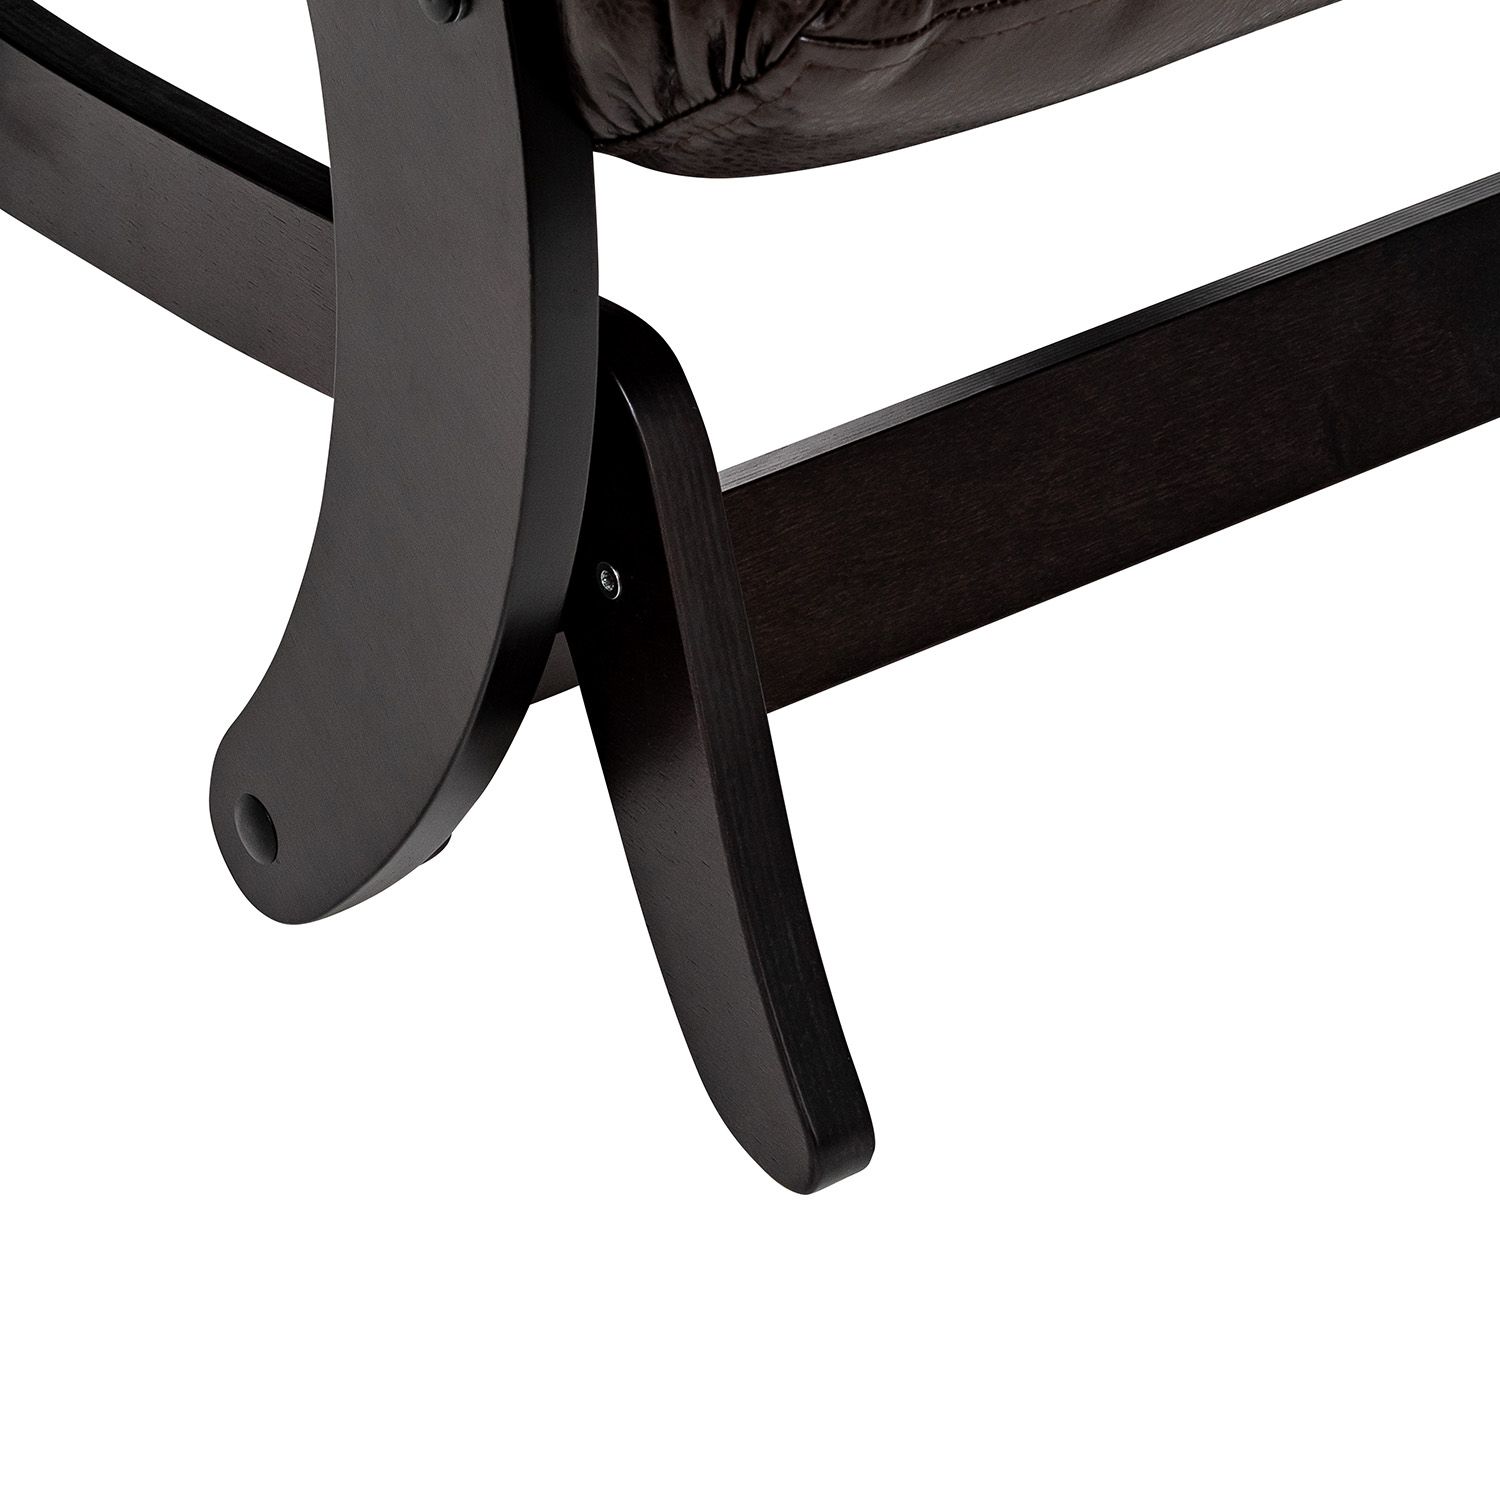 Кресло-качалка Модель 68 Венге текстура, экокожа Varana DK-BROWN